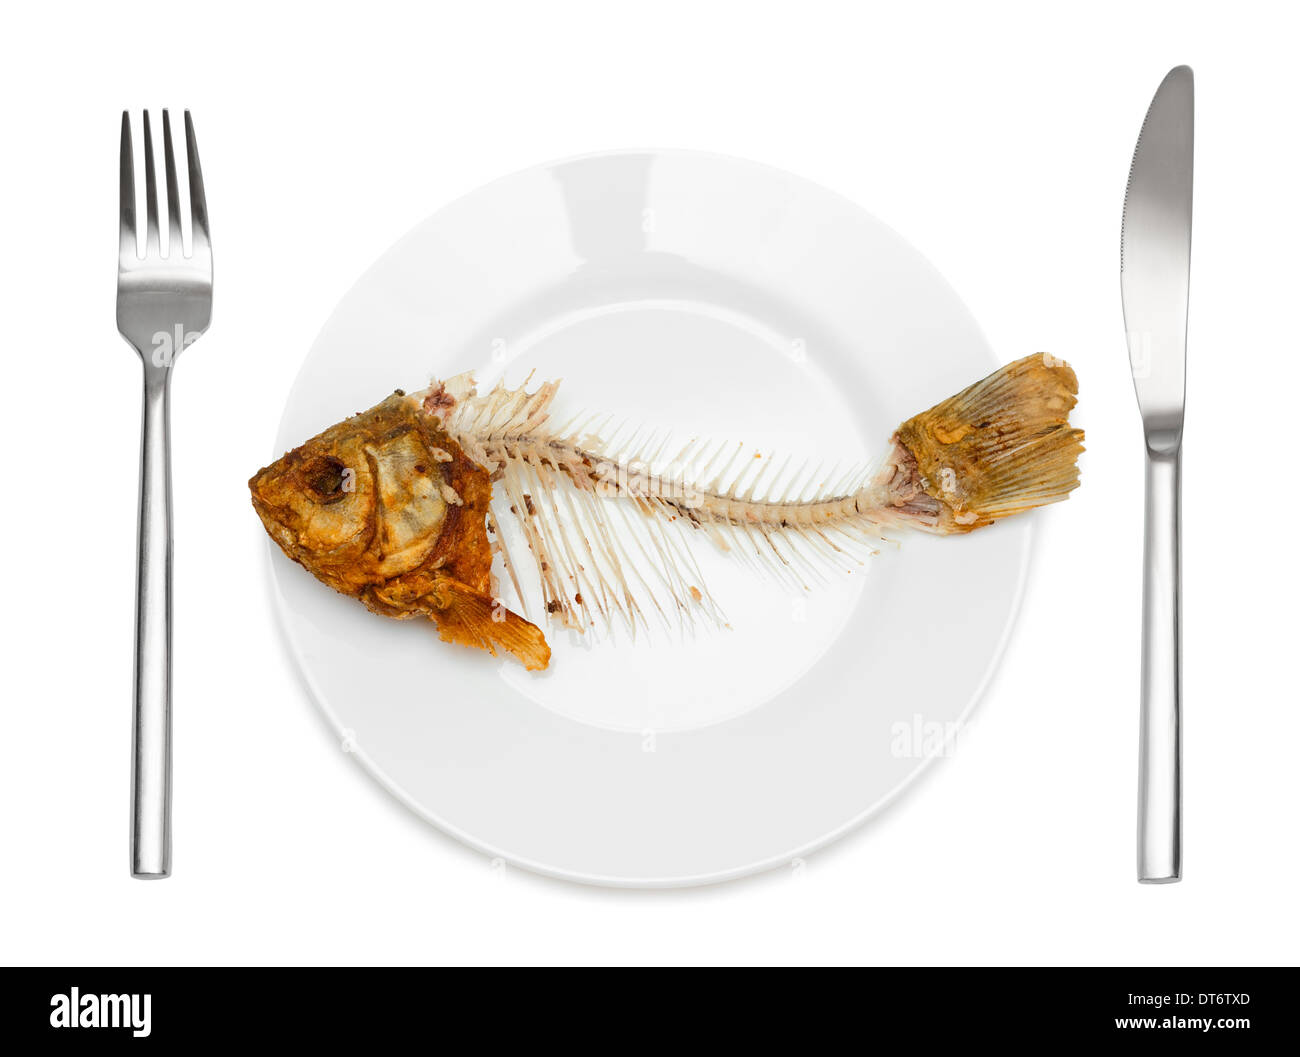 Squelette de poisson sur l'assiette - symbole de la disette et la misère. Isolé sur fond blanc. Banque D'Images